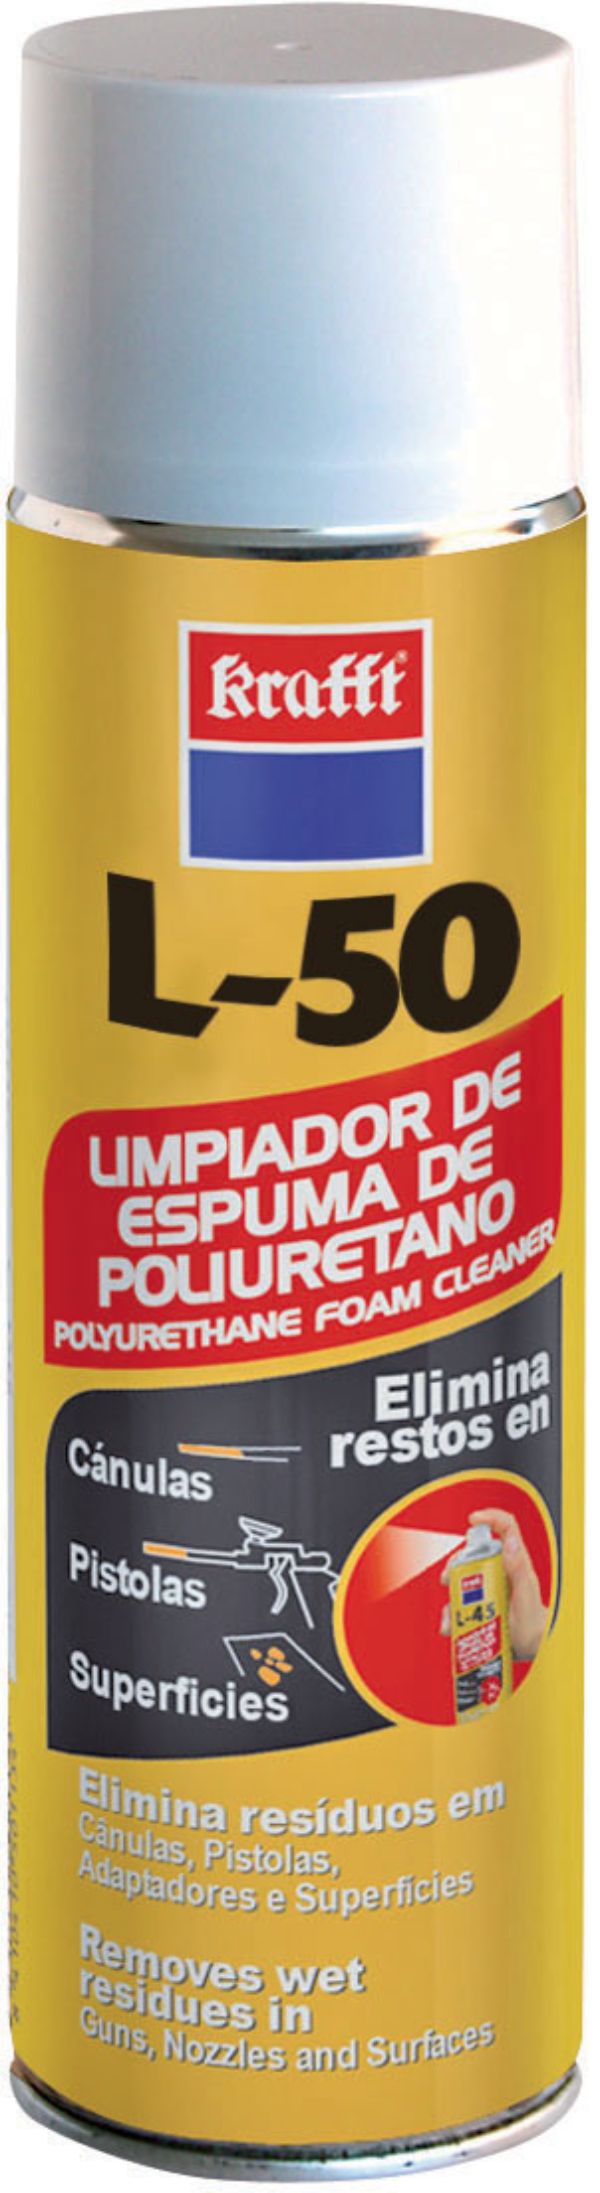 Limpiador Espuma de Poliuretano L-50